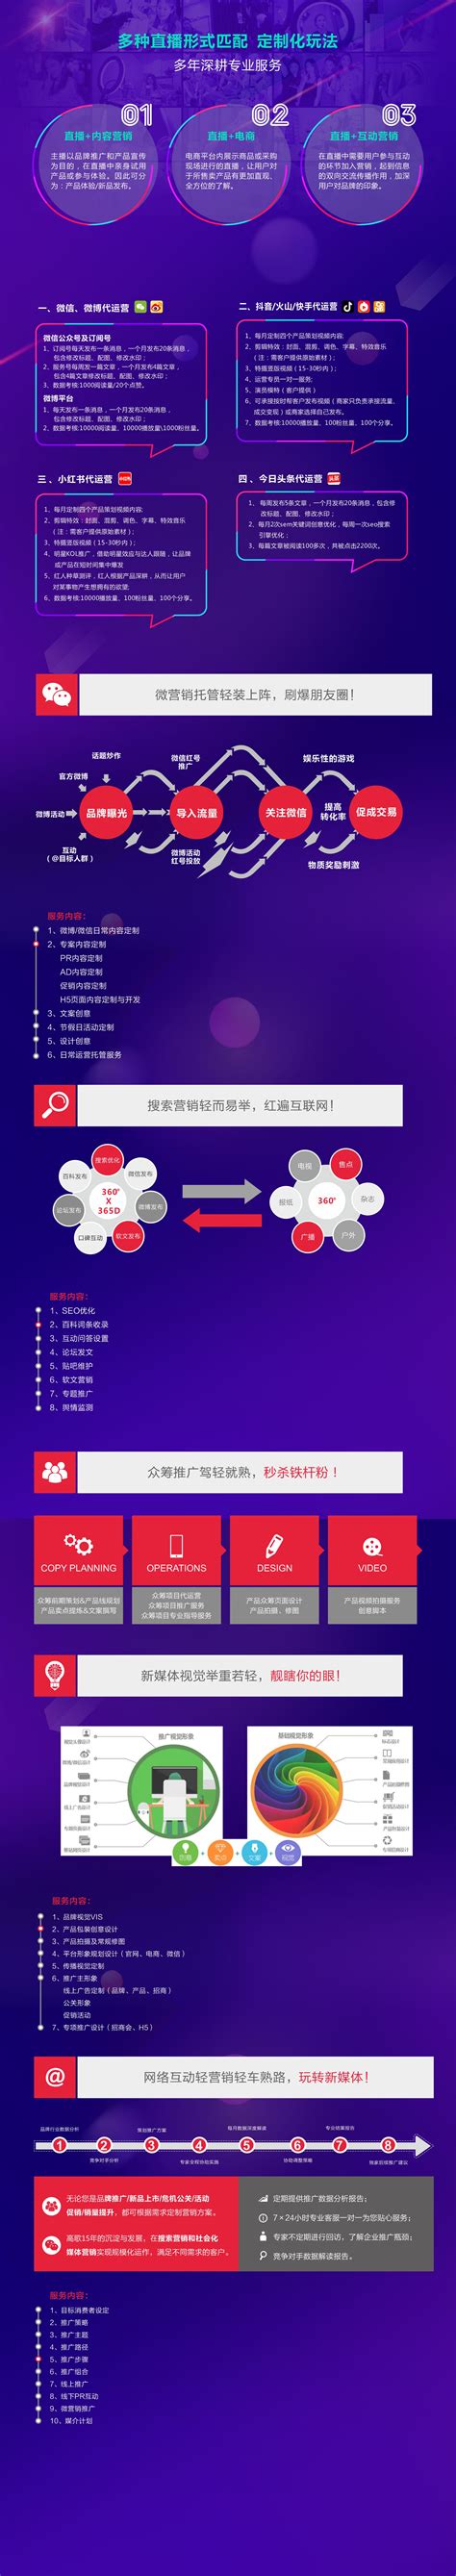 深圳网站推广都有哪些好的方法 - 方维网络